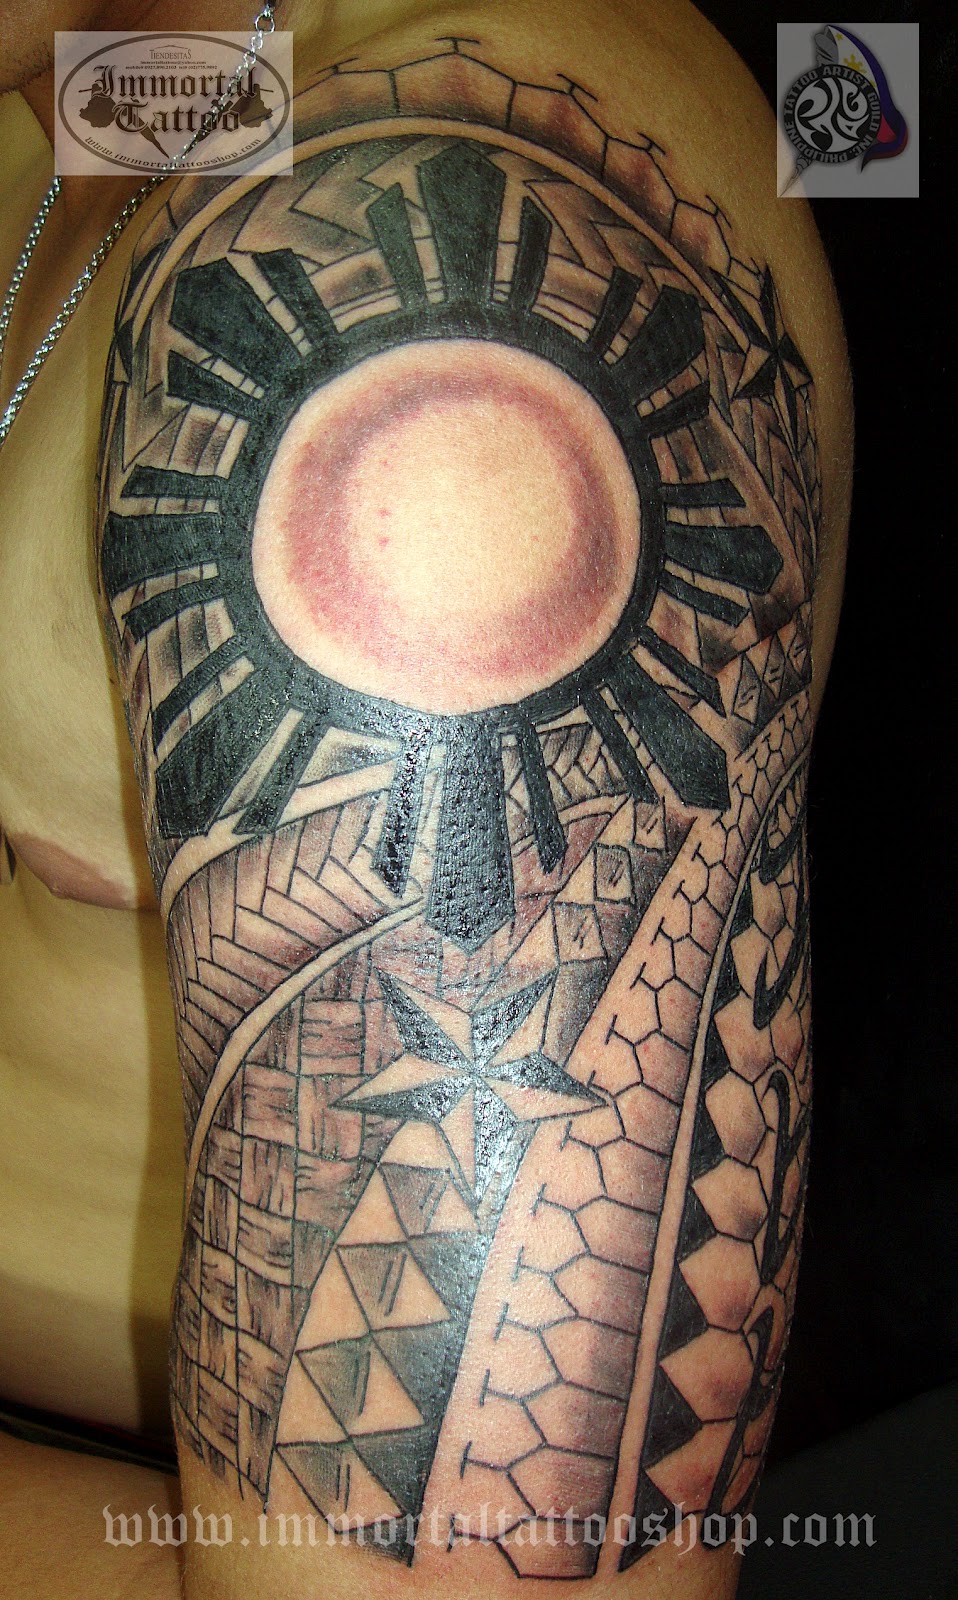 FILIPINOTATTOO: Filipino Tattoo / 3 stars n sun tattoo